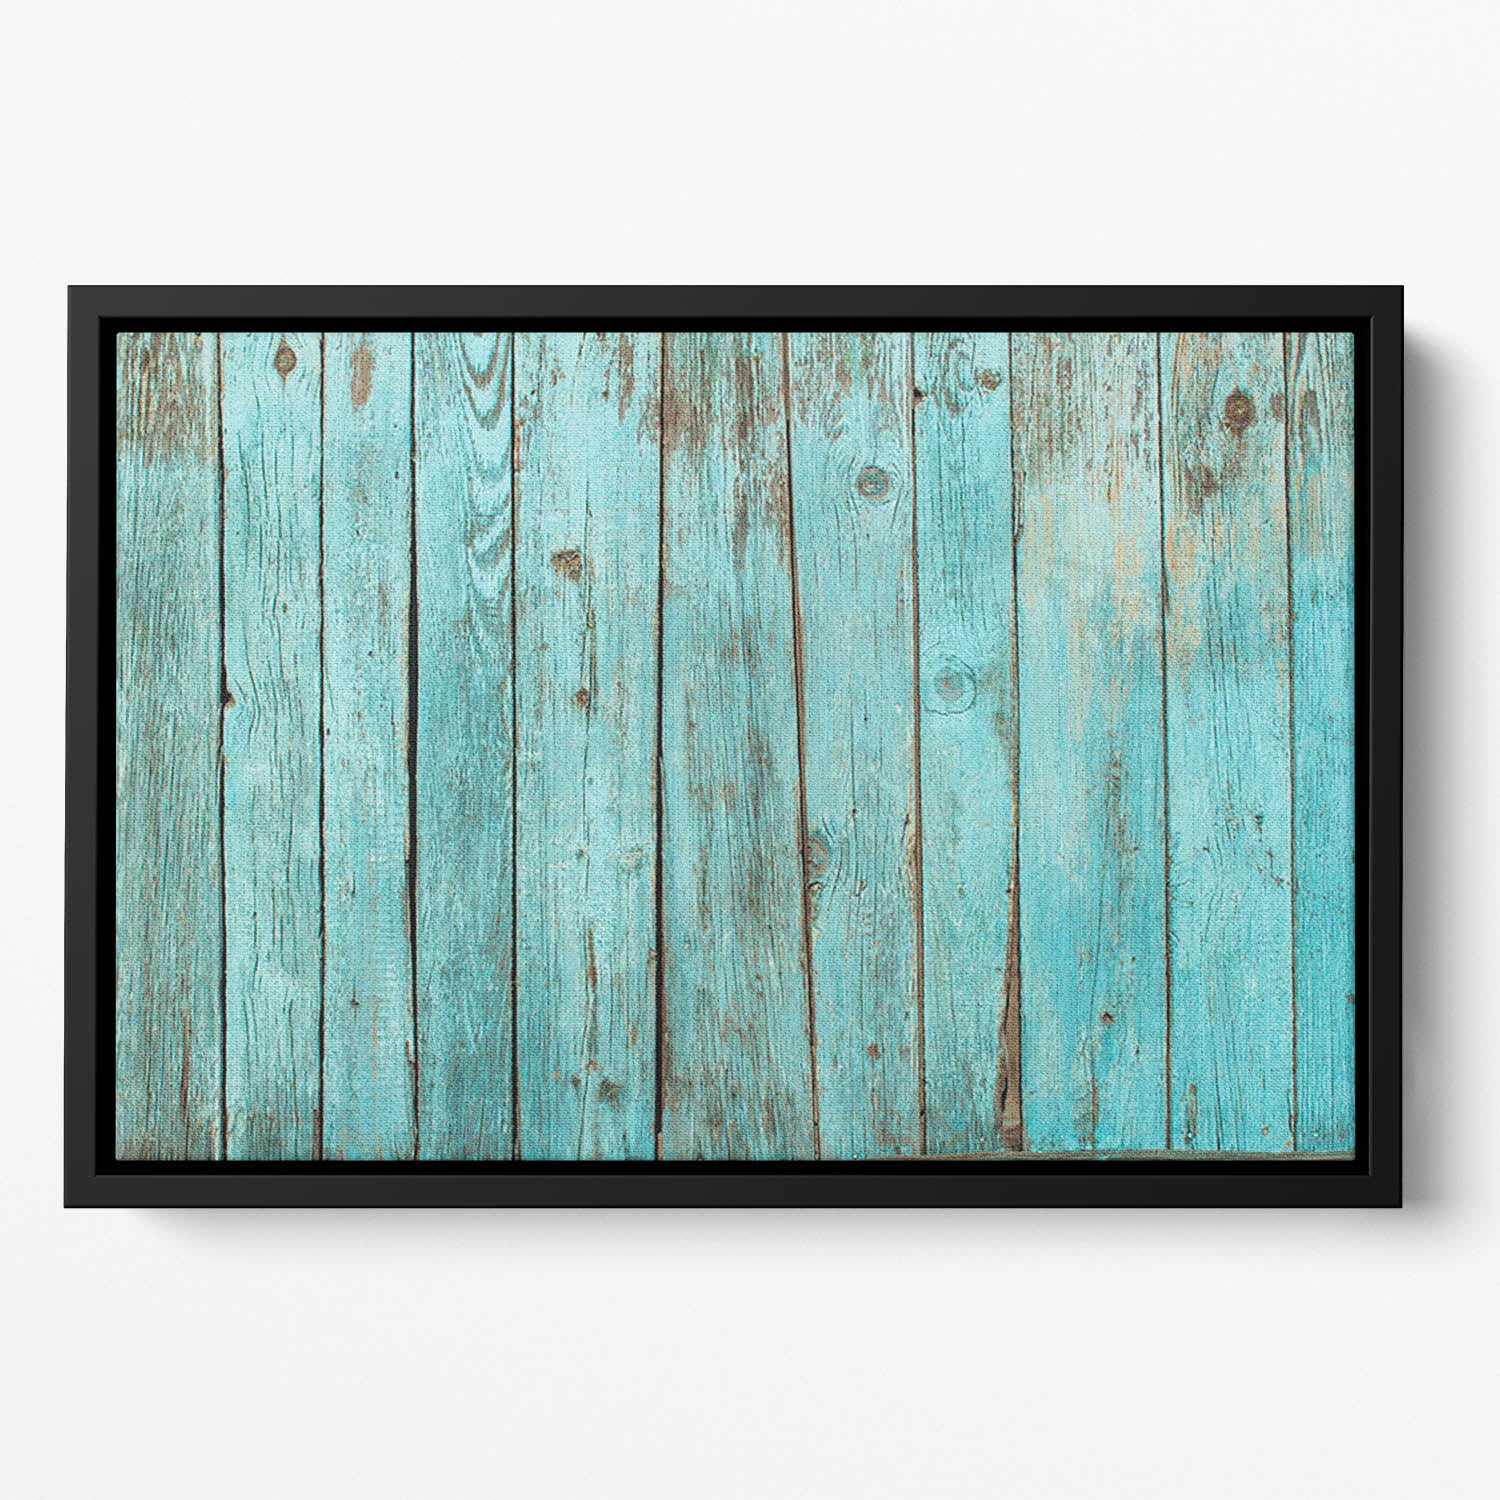 Battered old wooden blue Floating Framed Canvas